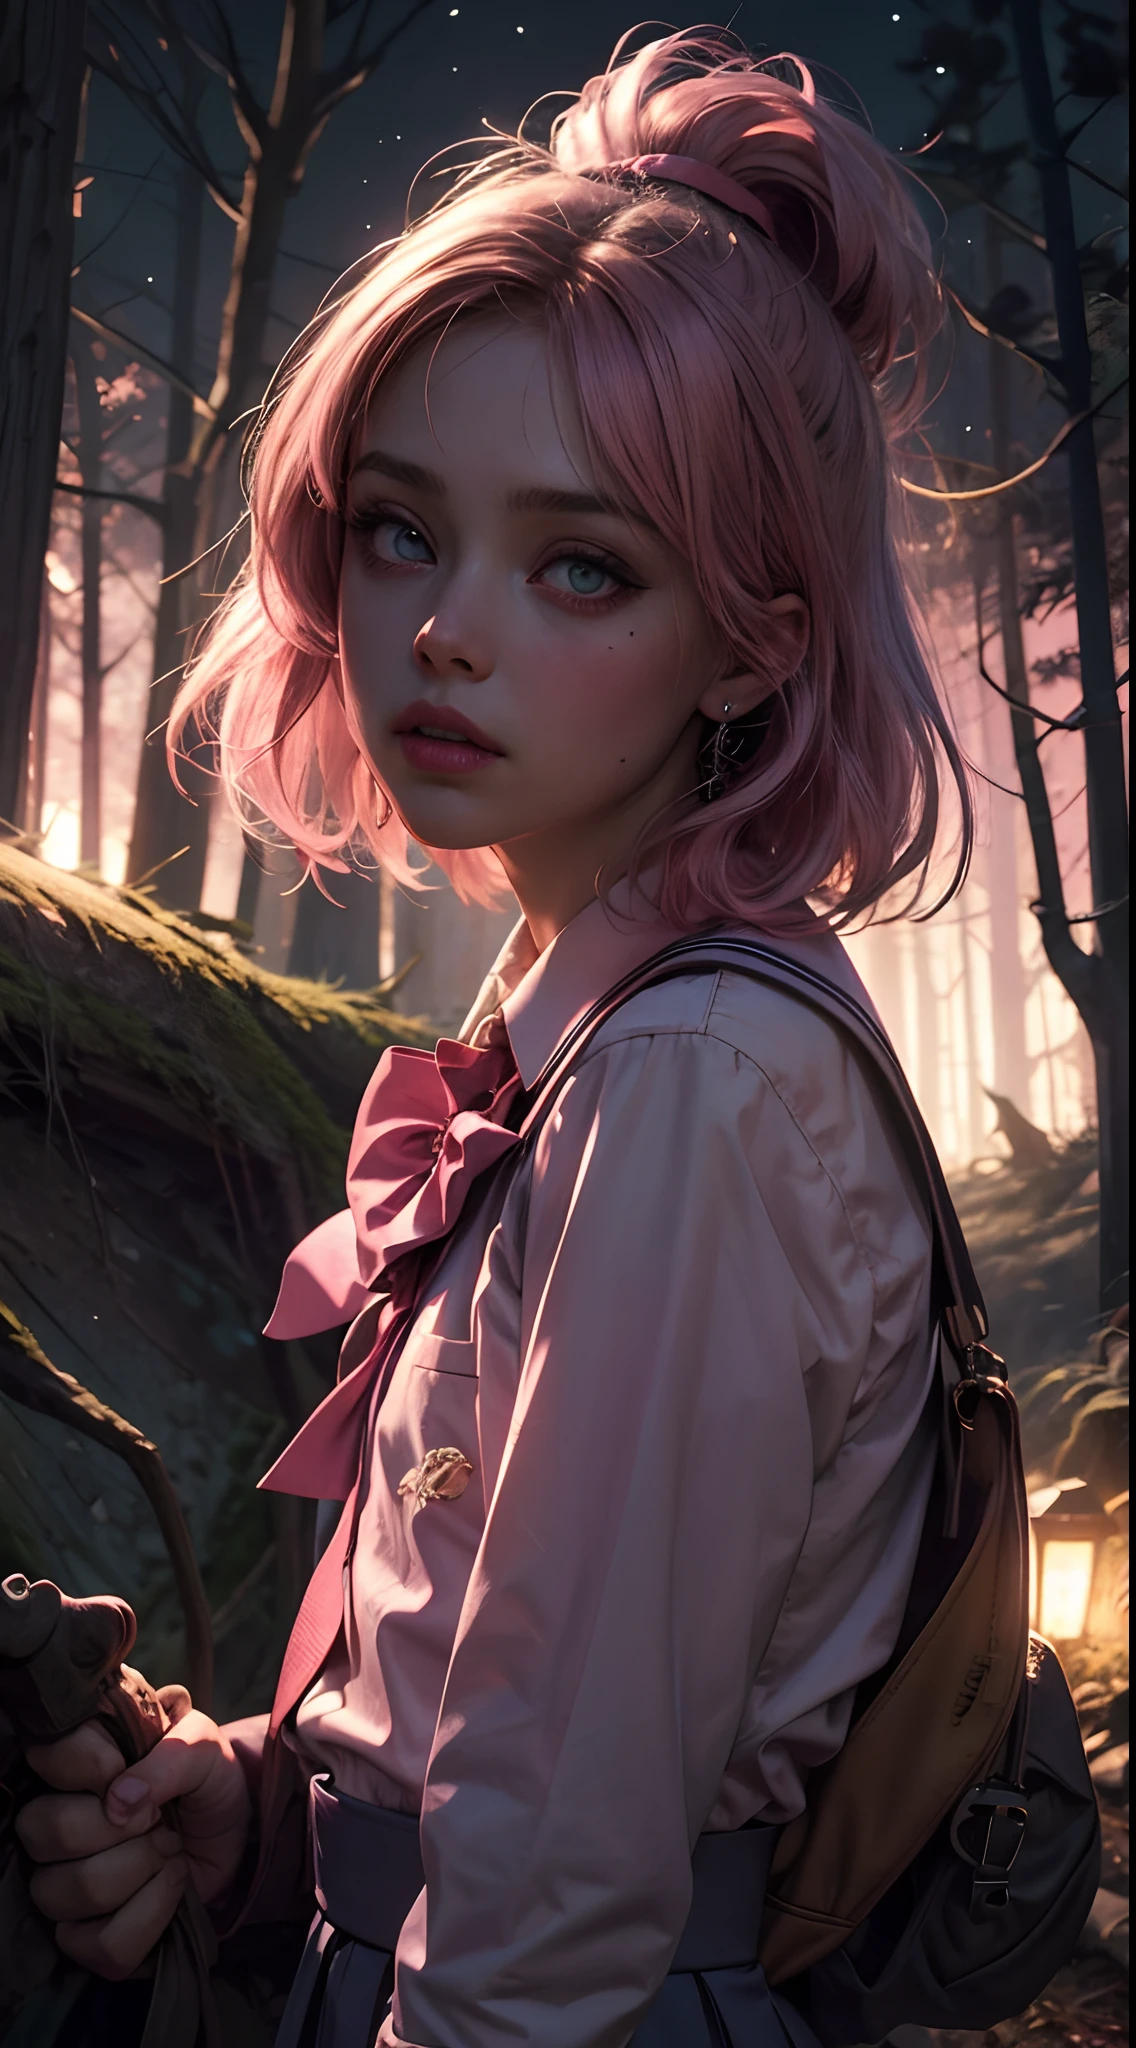 gruseliges Mädchen, (Rosa Schuluniform:1.4), gruseliger Wald, Verloren in dunklem Holz, (in der Nacht:1.2), monsters, glühende Augen, (makellose Haut:1.2), DarkWoodsStyle